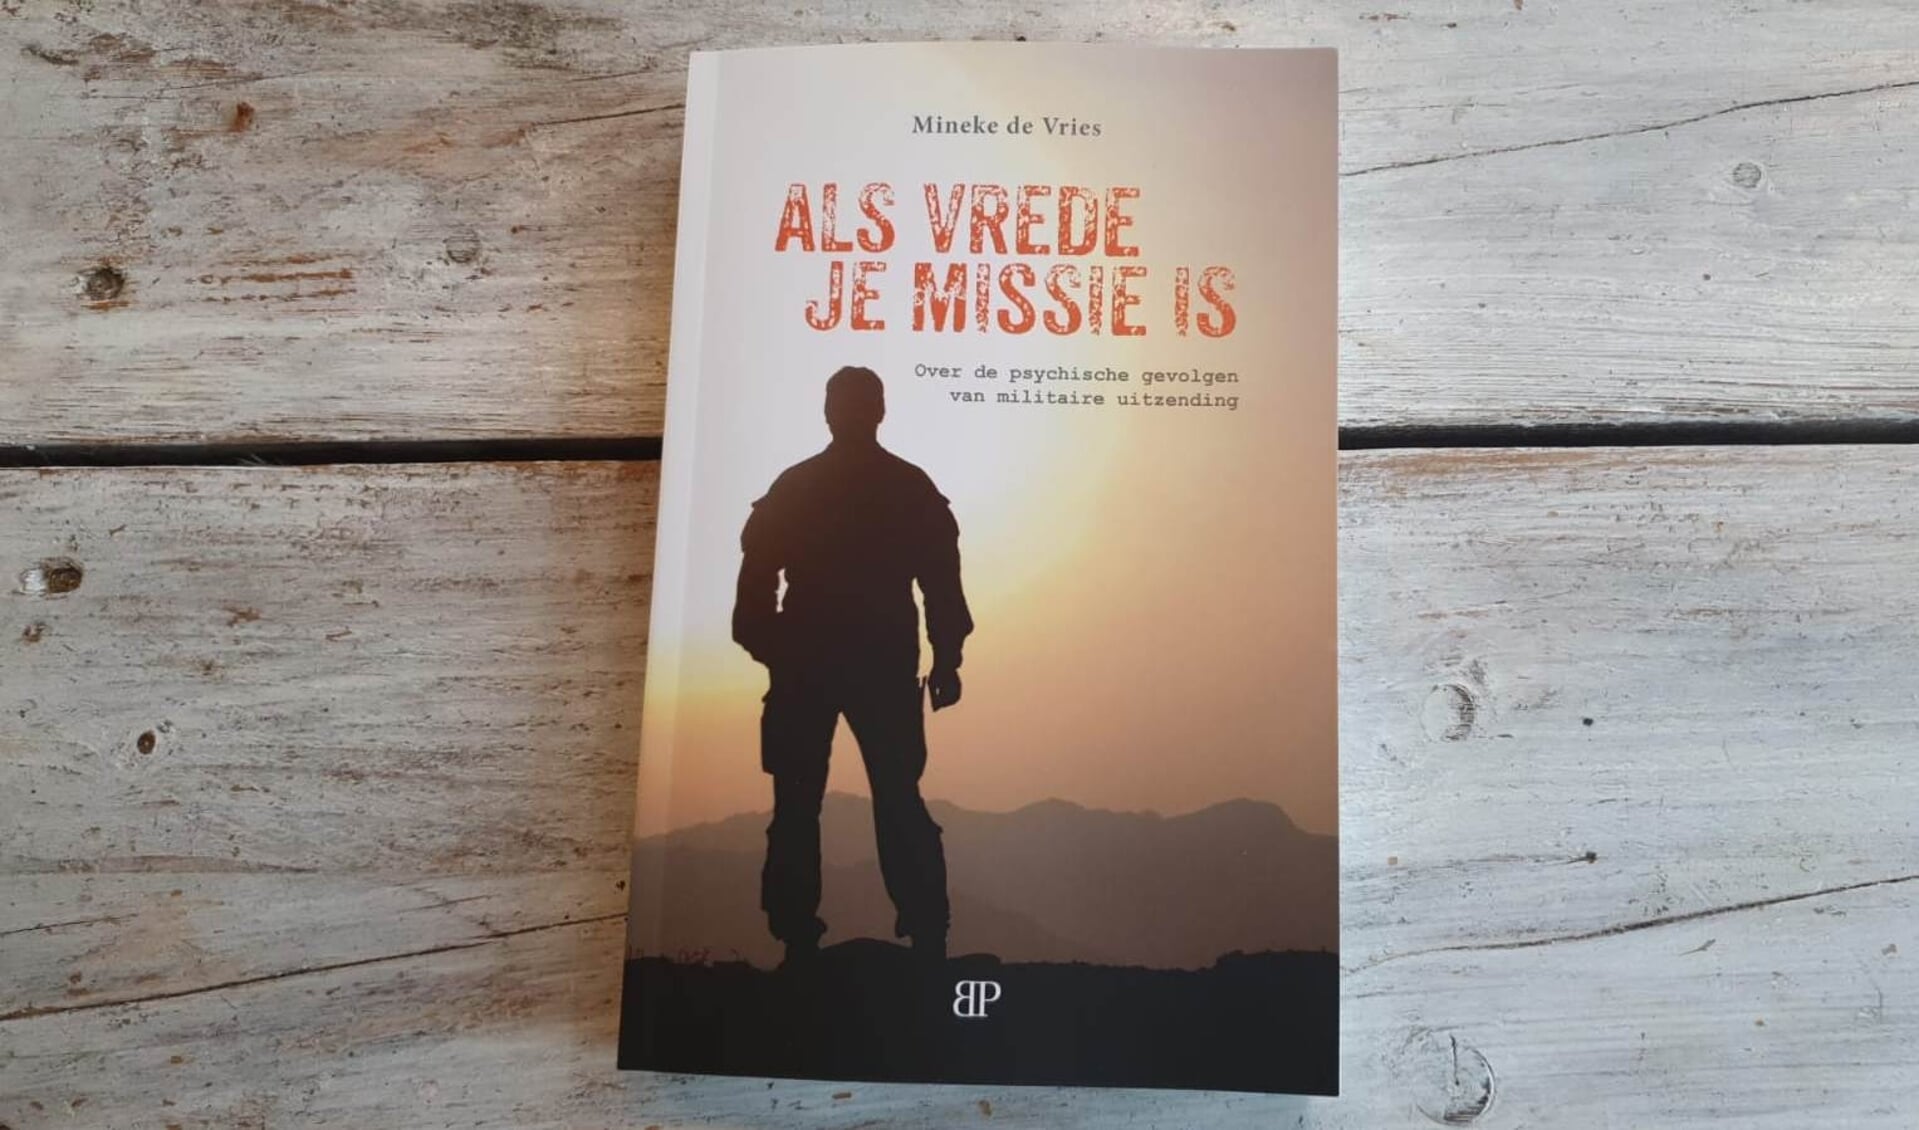 Het boek 'Als vrede je missie is' van Mineke de Vries.